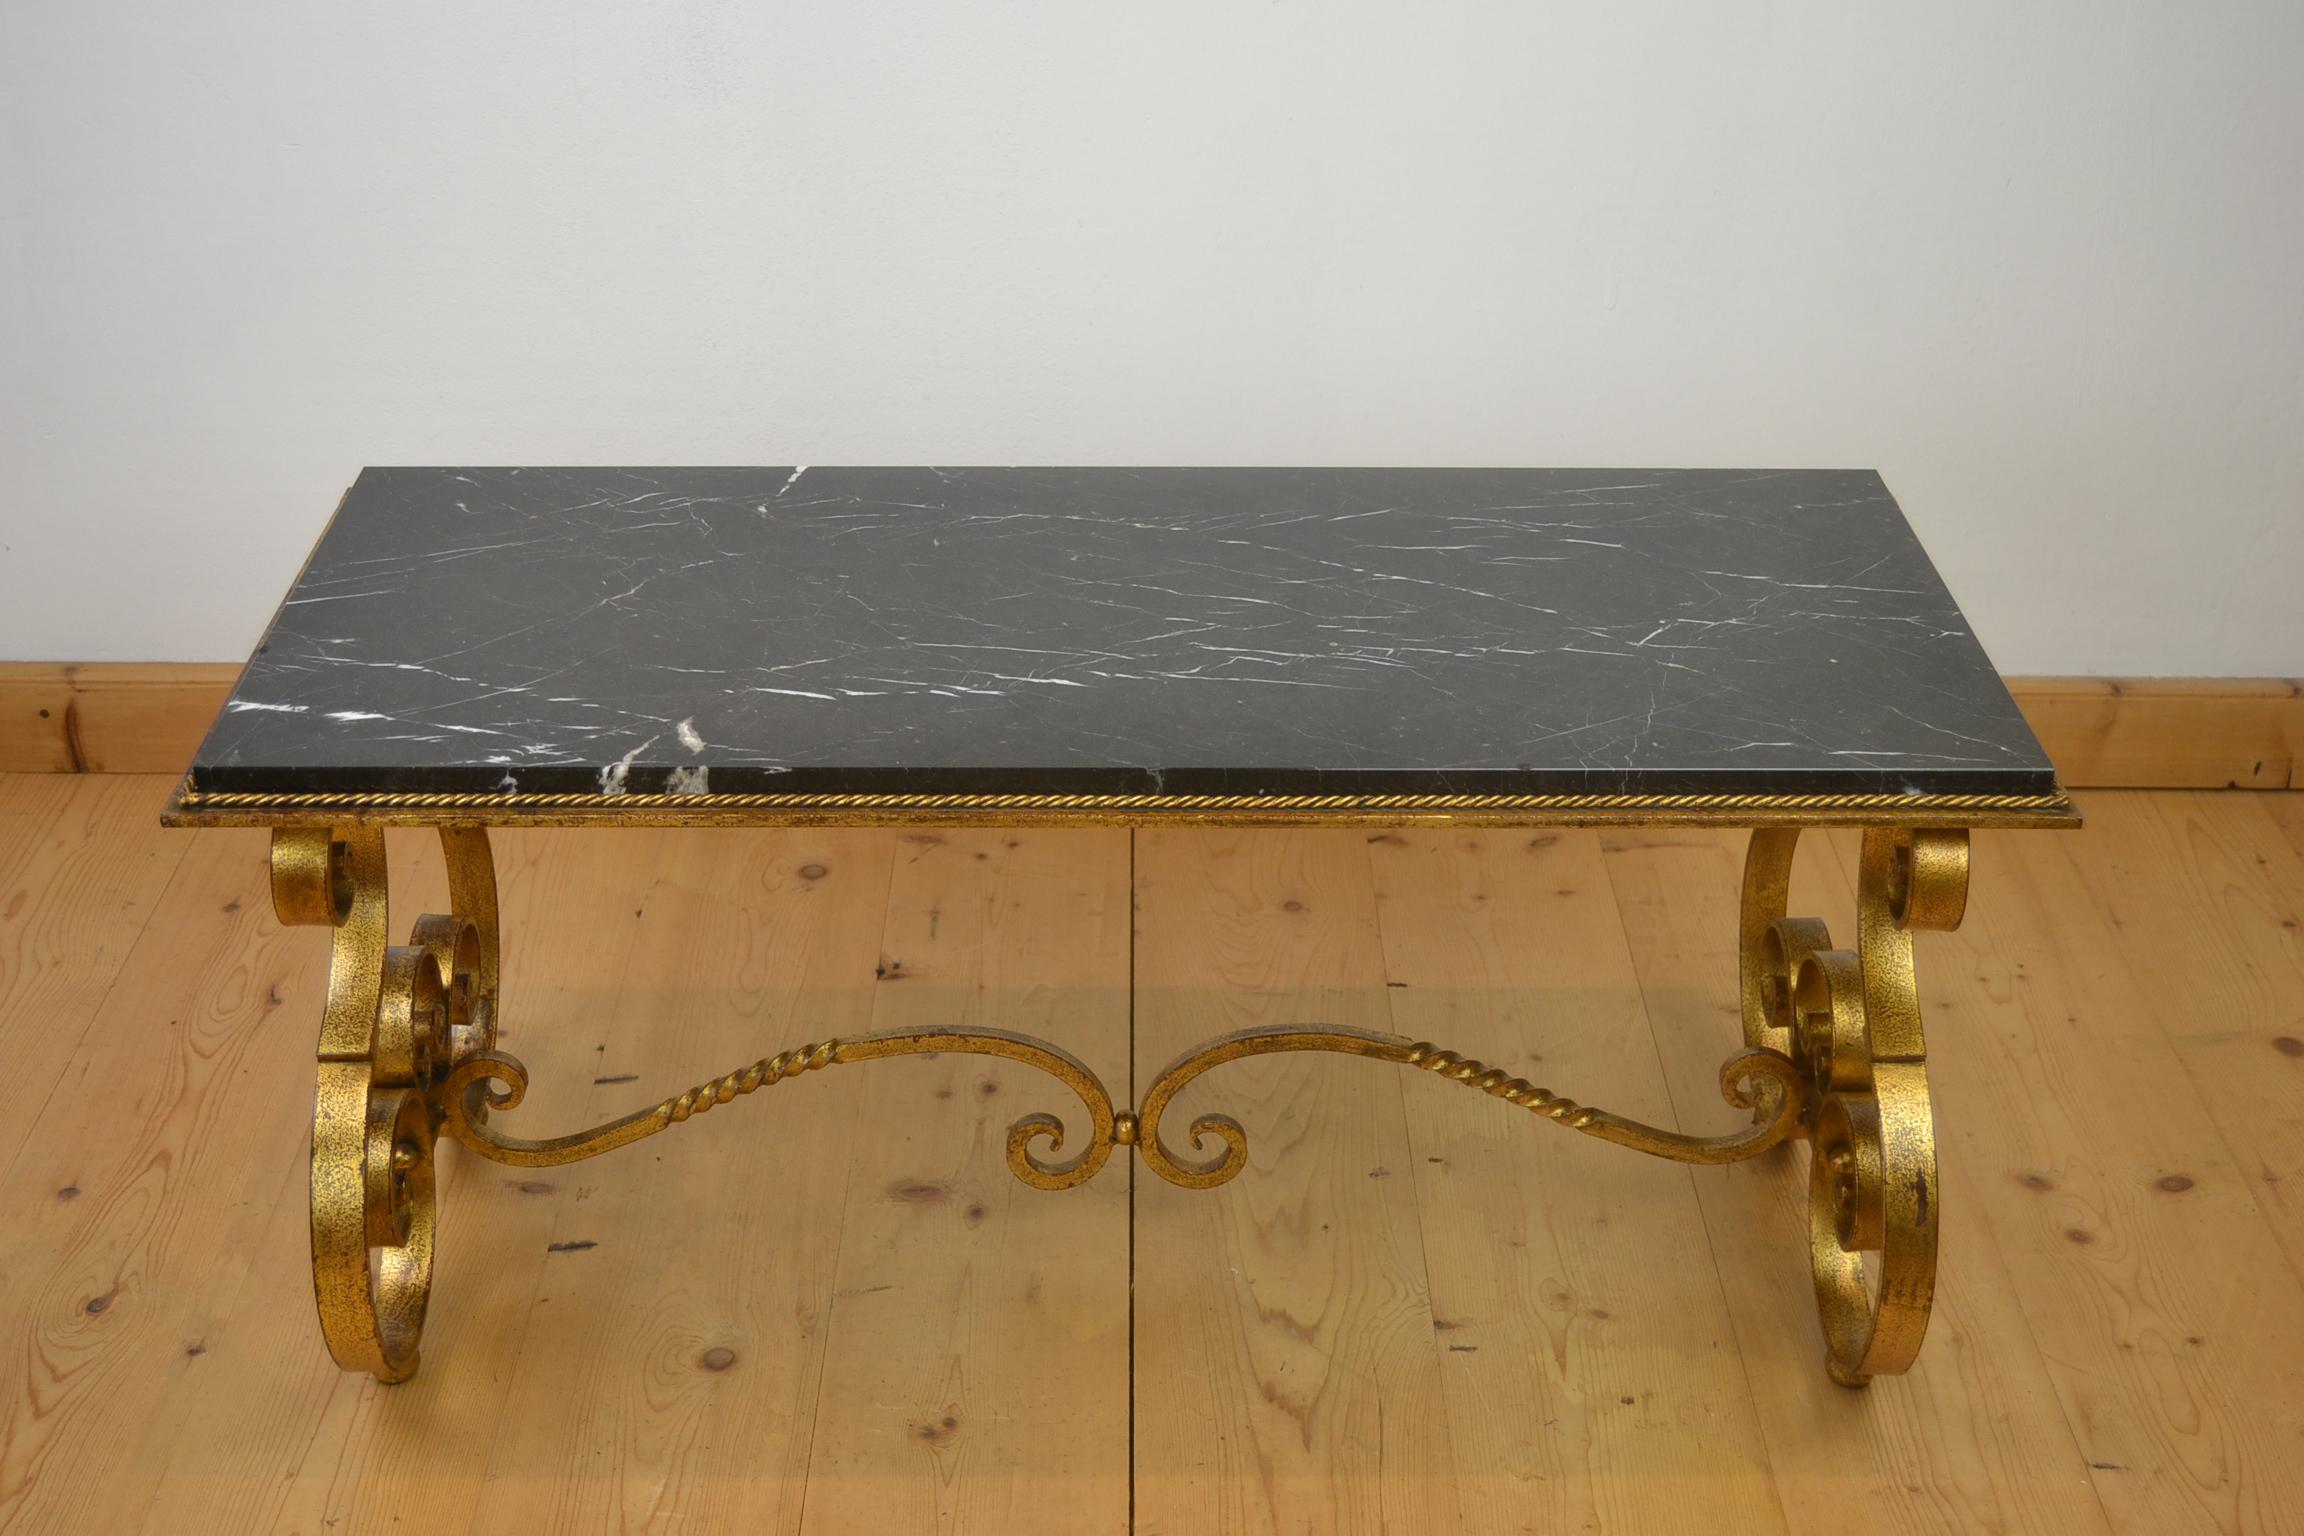 Table basse française en fer forgé avec un plateau en marbre des années 1950.
Cette superbe table basse est composée d'une base en fer forgé doré et courbé et d'un plateau ou d'un plateau en marbre noir verni poli. Autour du plateau en marbre se